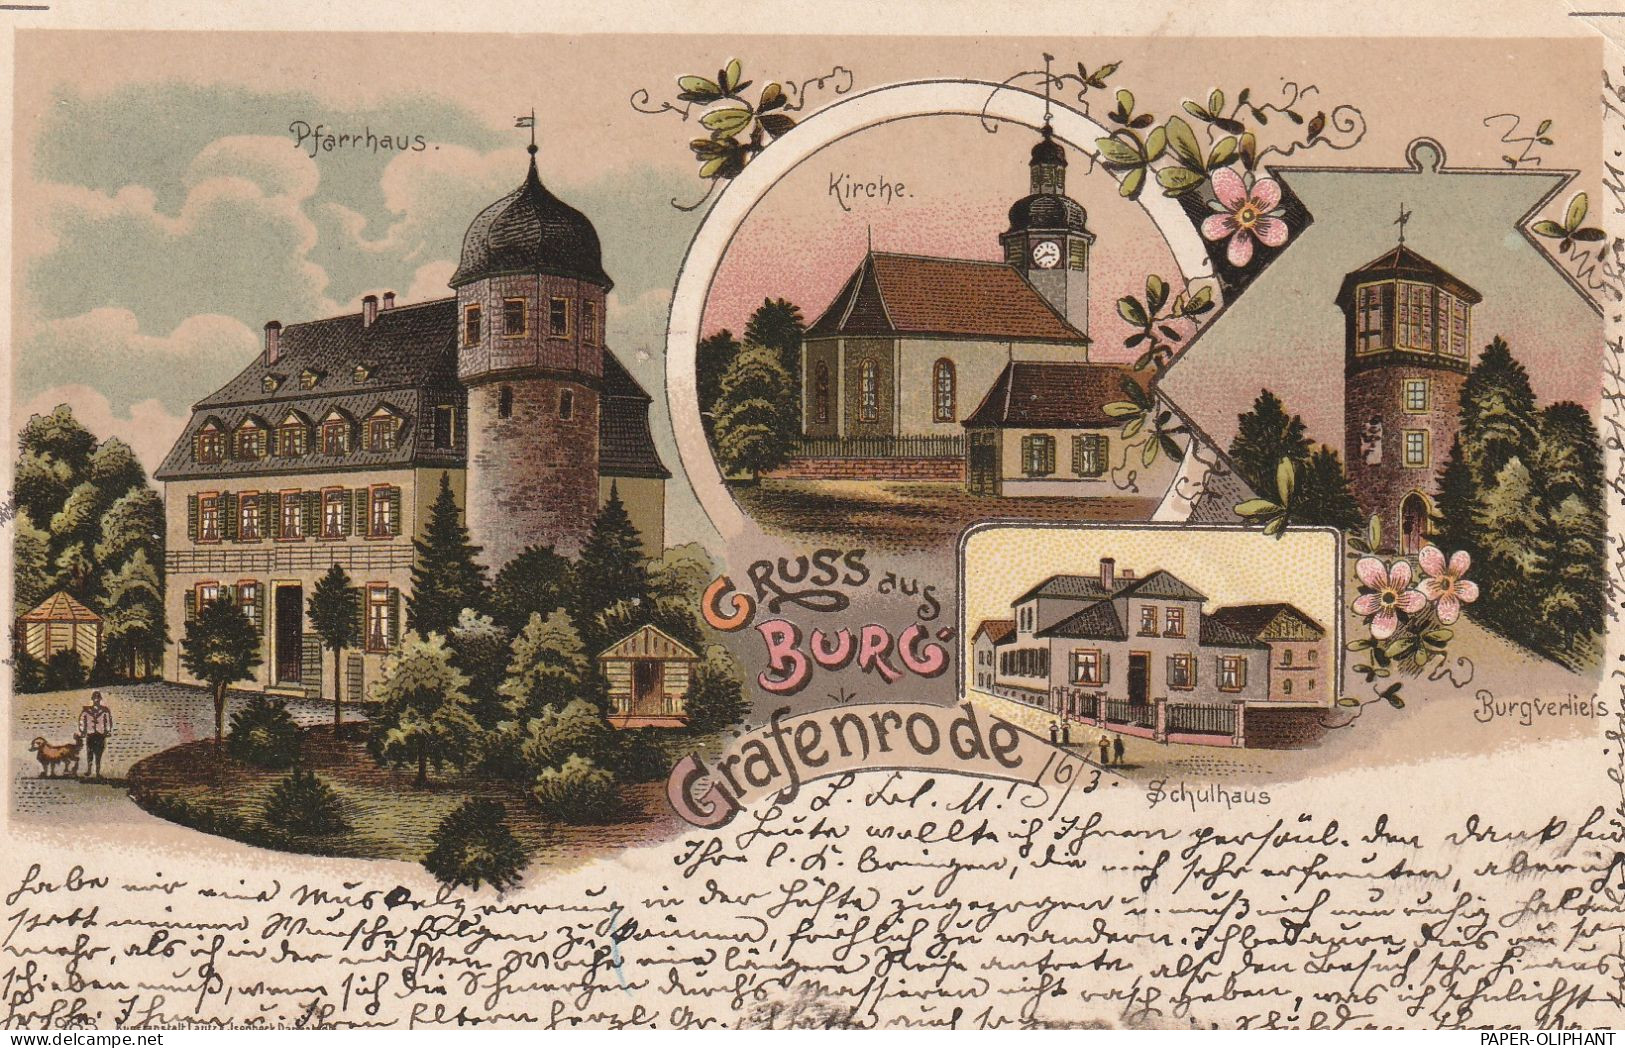 6367 KARBEN - BURG GRÄFENRODE, Lithographie, Schule, Kirche, Burgverlies, Pfarrhaus - Karben